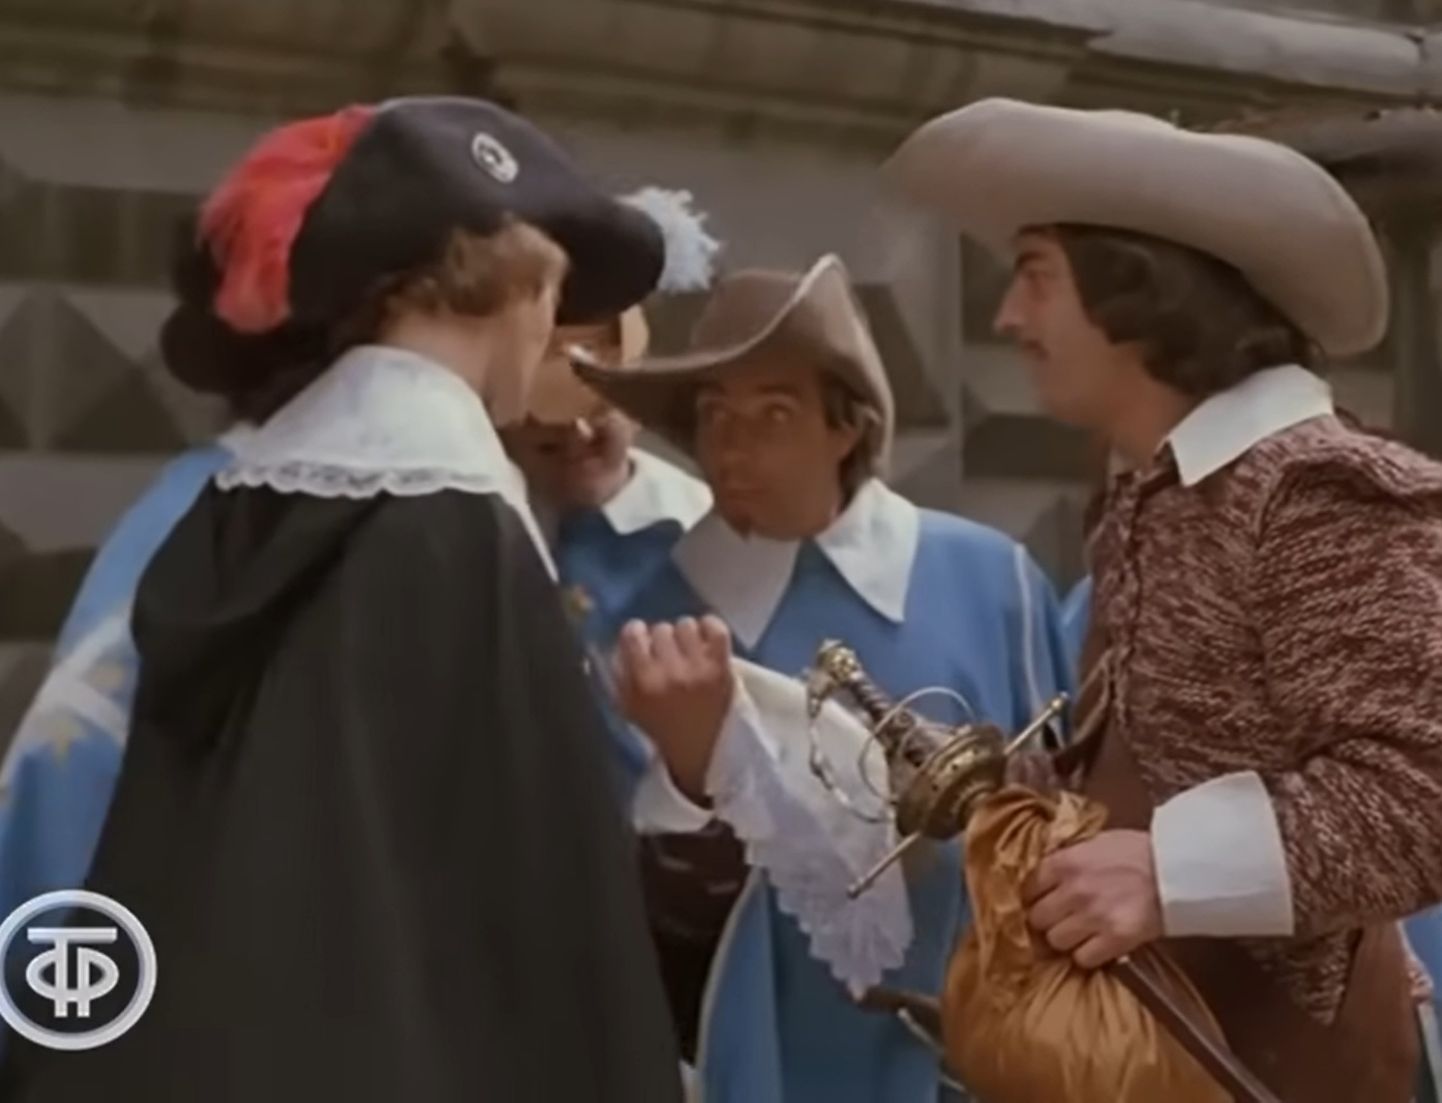 Кадр из фильма «Д'Артаньян и три мушкетера». Кустов исполнил роль одного из мушкетеров (на скриншоте он посередине).